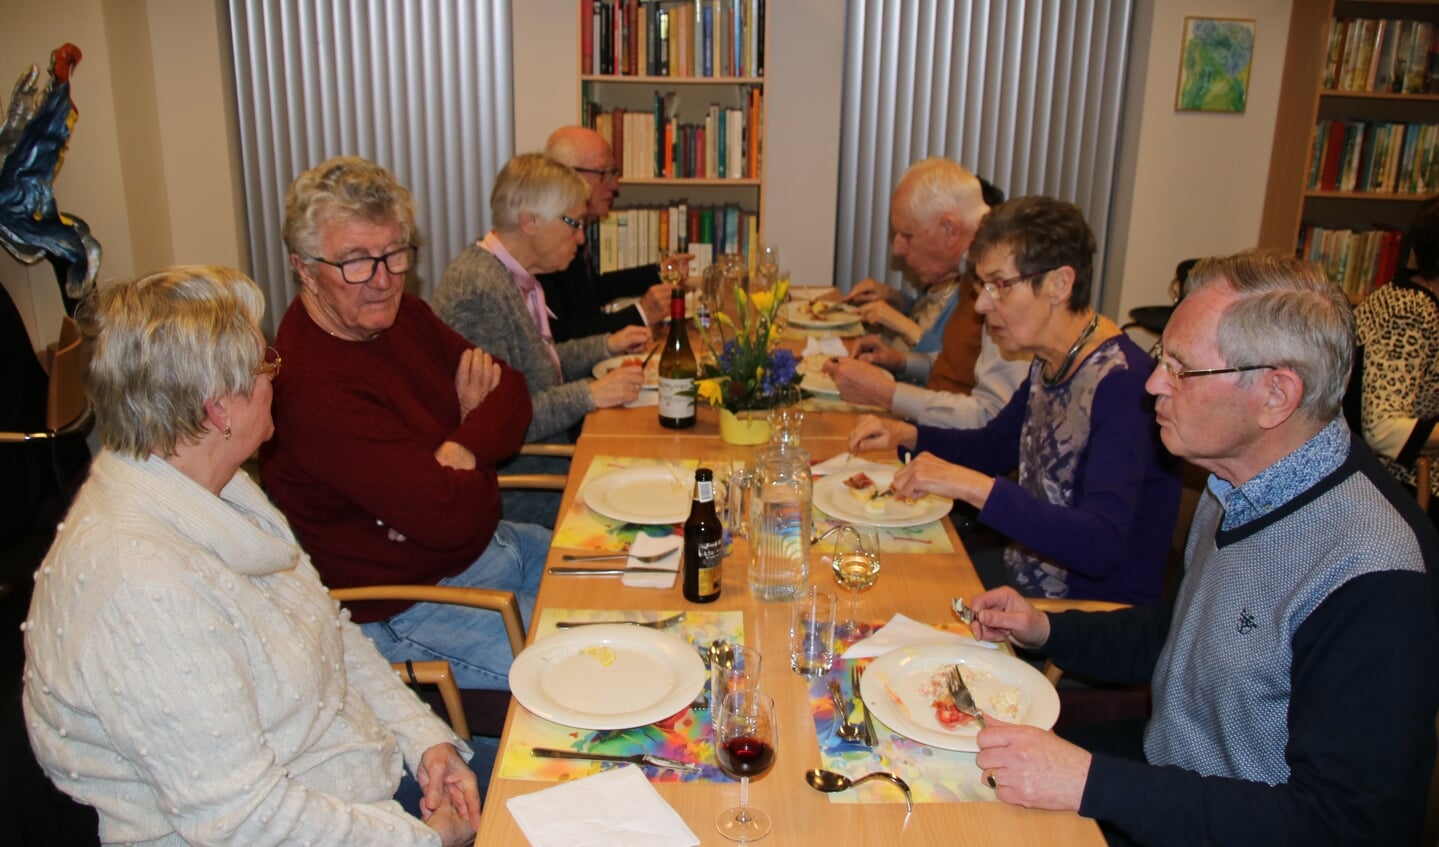 De bewoners van Sleijeborgh vierden het 10-jarig bestaan van hun seniorenresidentie met een gezellig samenzijn met heerlijke, luxueuze gerechten.